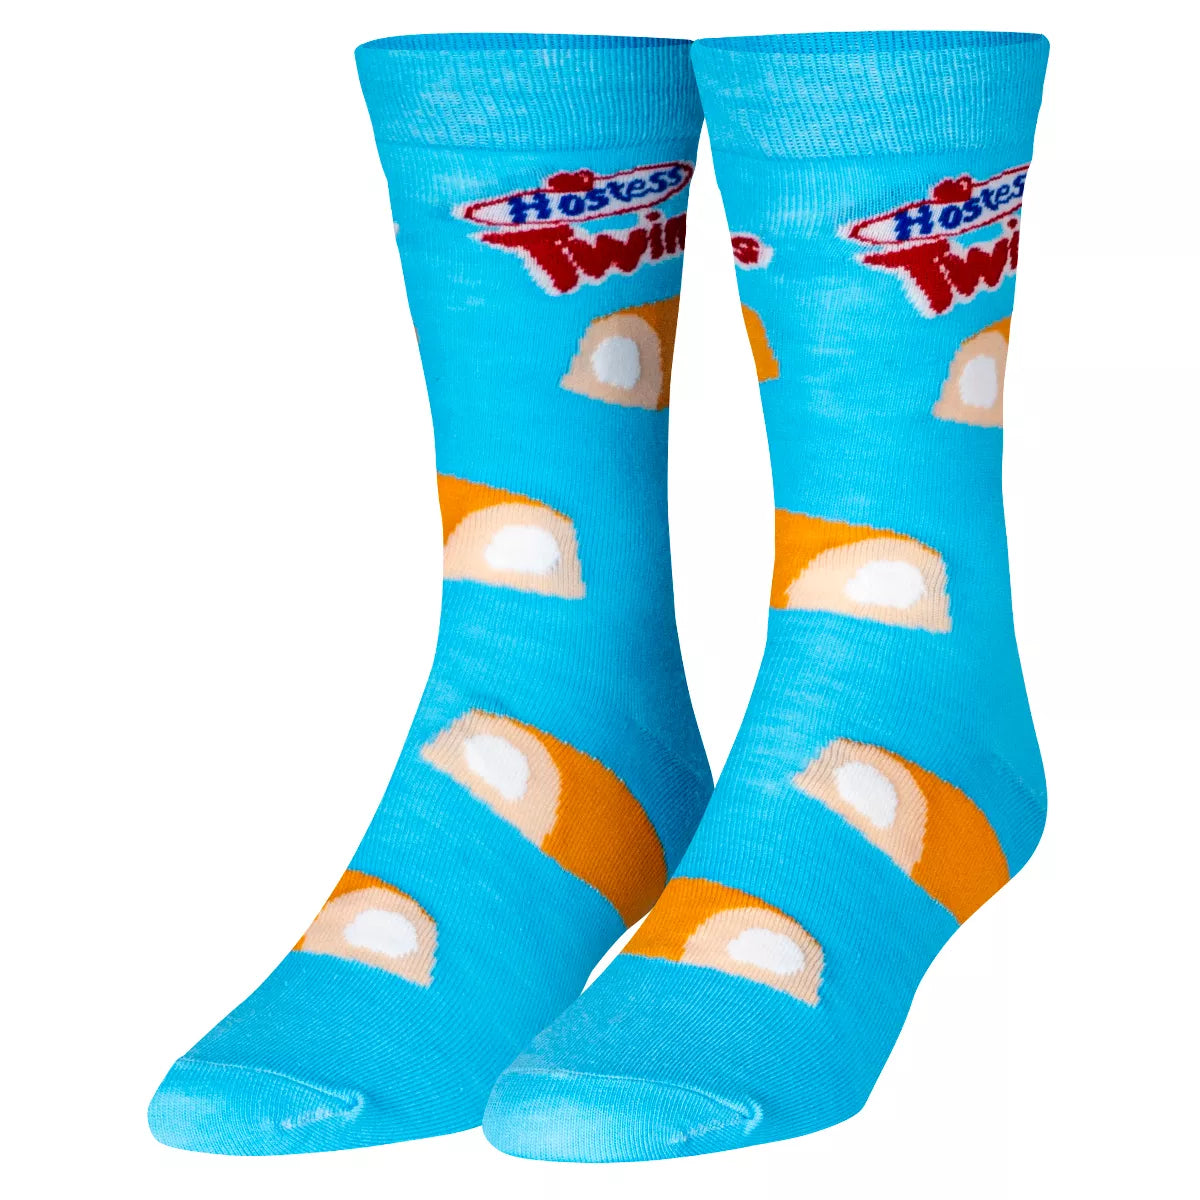 Hostess Twinkies Crew Socks-Men's